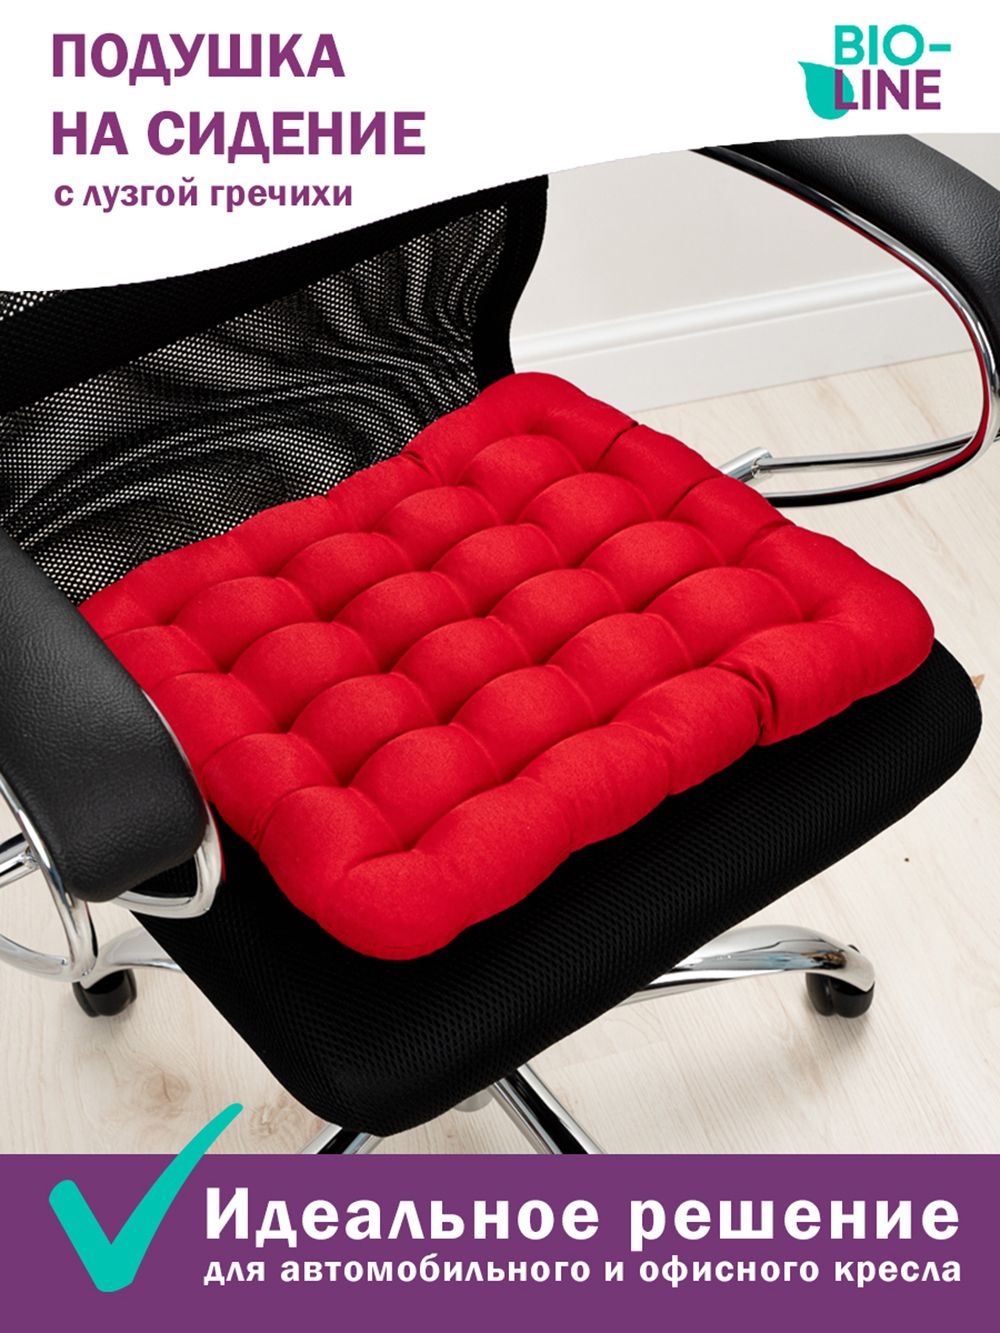 Подушка на стул Bio-Line с гречневой лузгой PSG25 - красный